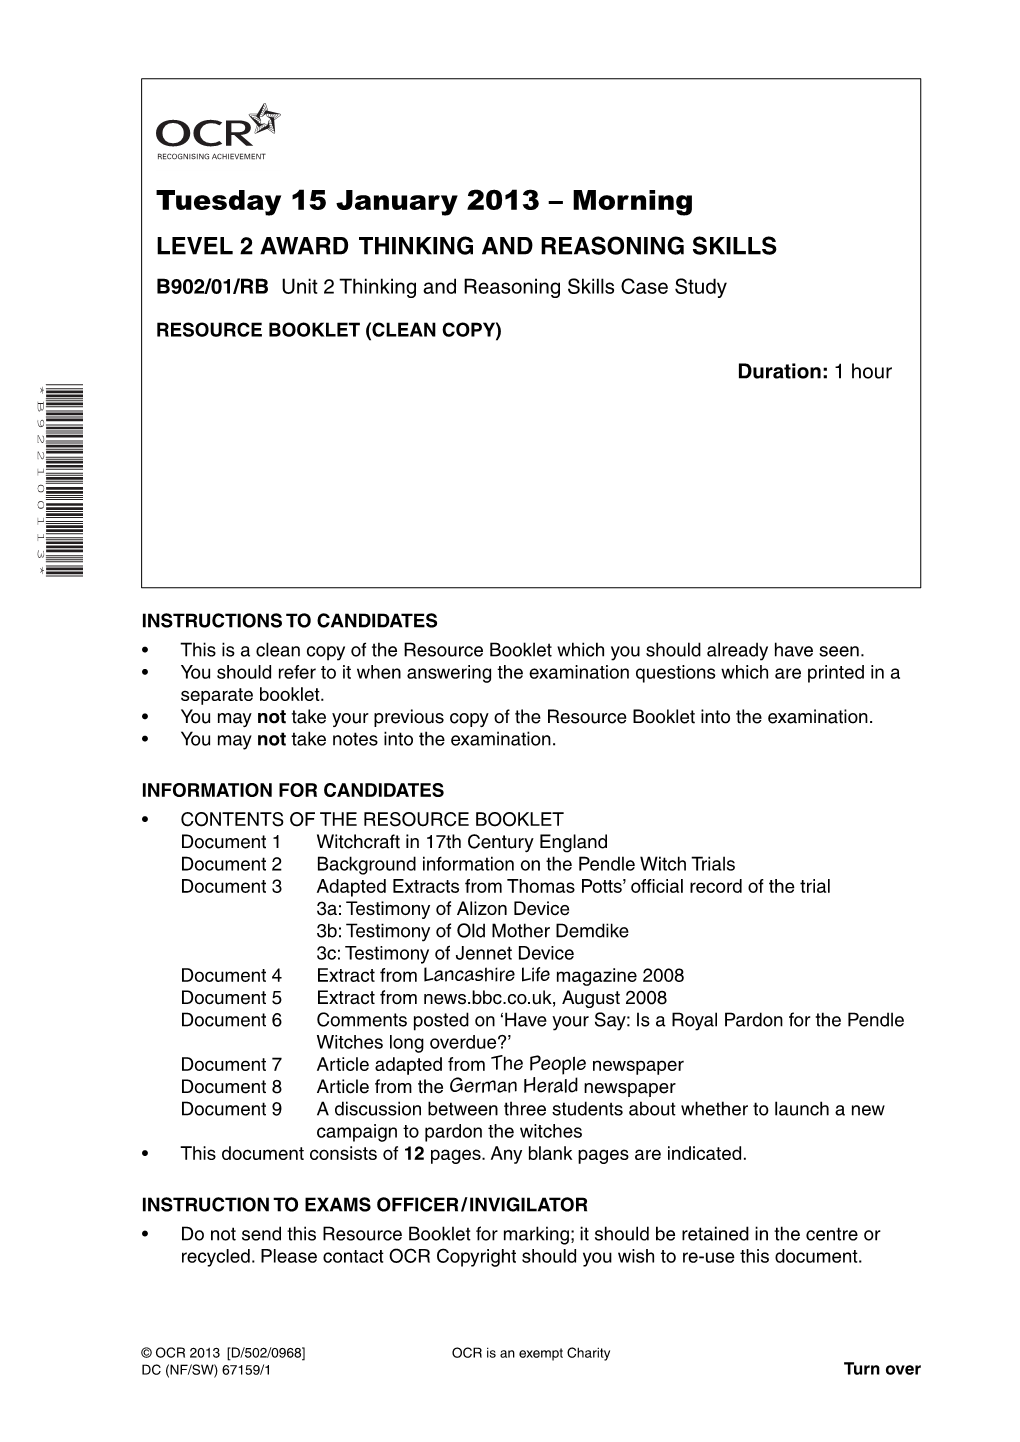 Tuesday 15 January 2013 – Morning LEVEL 2 AWARD THINKING and REASONING SKILLS B902/01/RB Unit 2 Thinking and Reasoning Skills Case Study